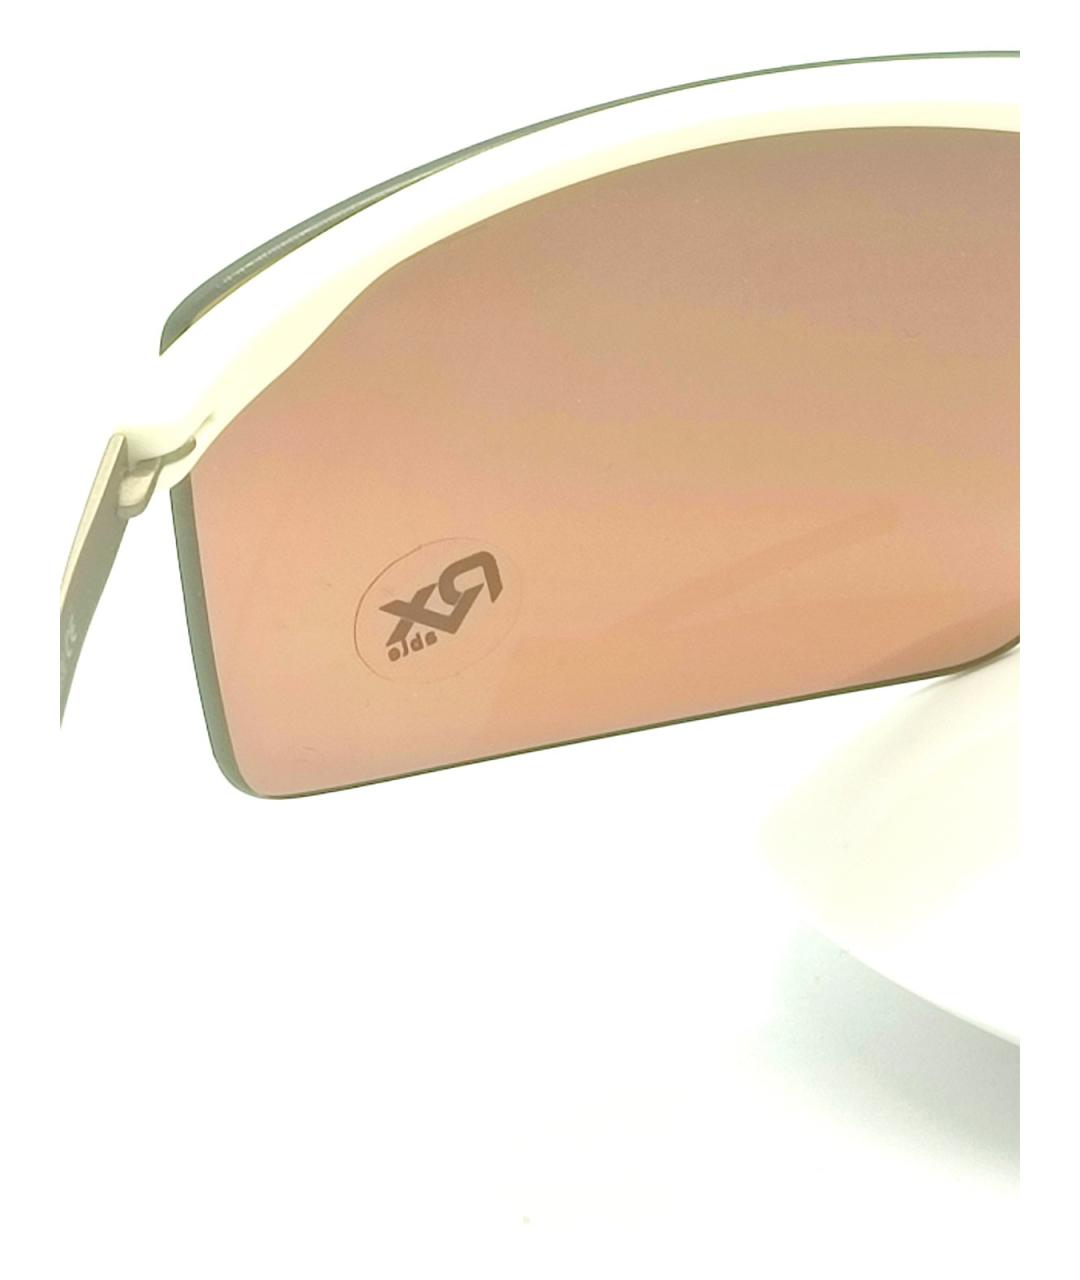 SILHOUETTE Коричневые металлические солнцезащитные очки, фото 2